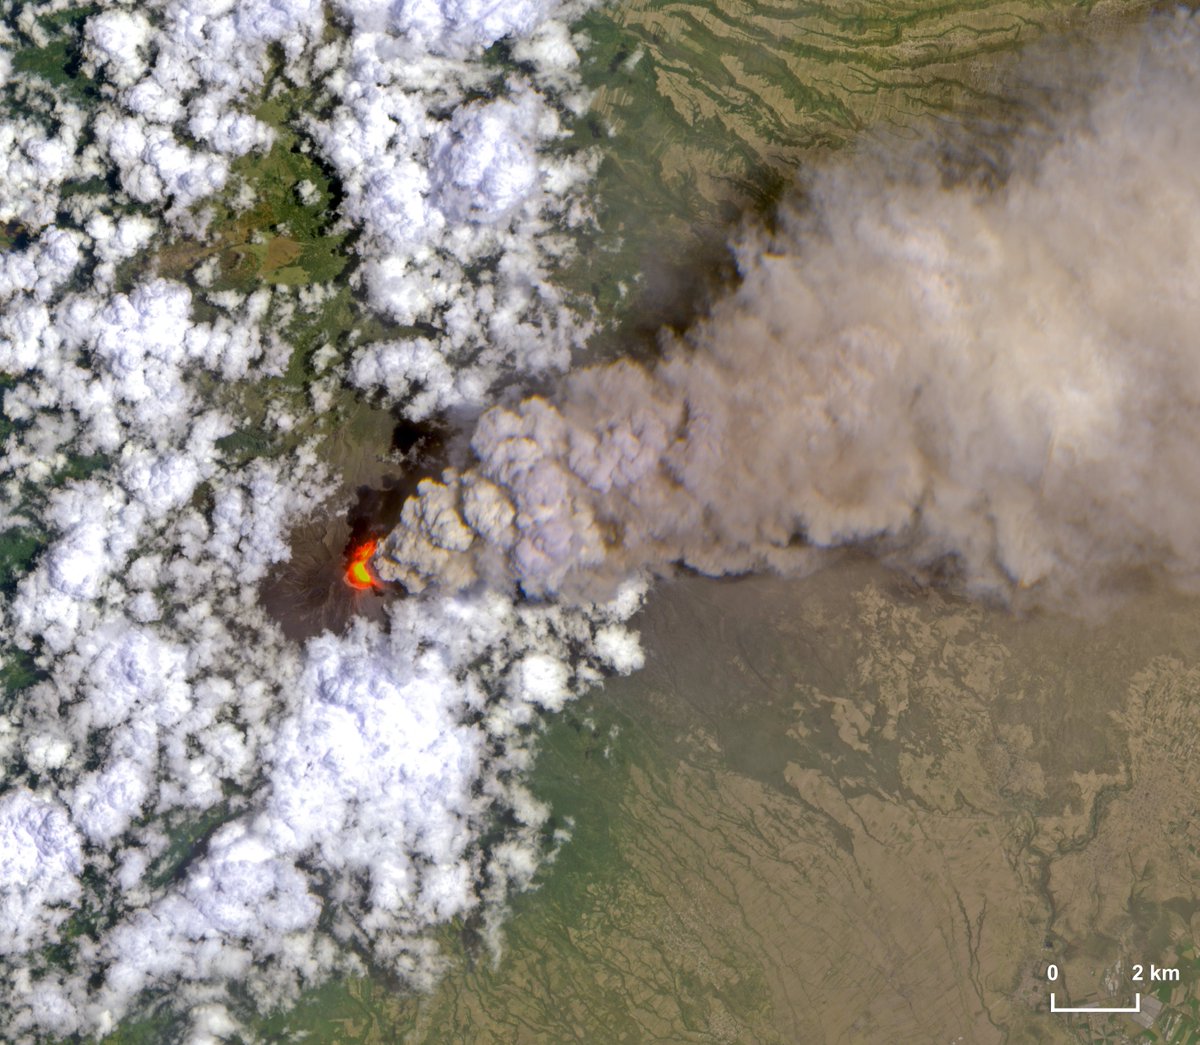 Para cerrar el día, la impresionante imagen del #Popocatépetl captada por el satélite Sentinel2 de la Agencia Espacial Europea.

Se observa la importante anomalía térmica que acompañó la emisión de ceniza y la posible formación de un domo de lava. Cuando las condiciones…